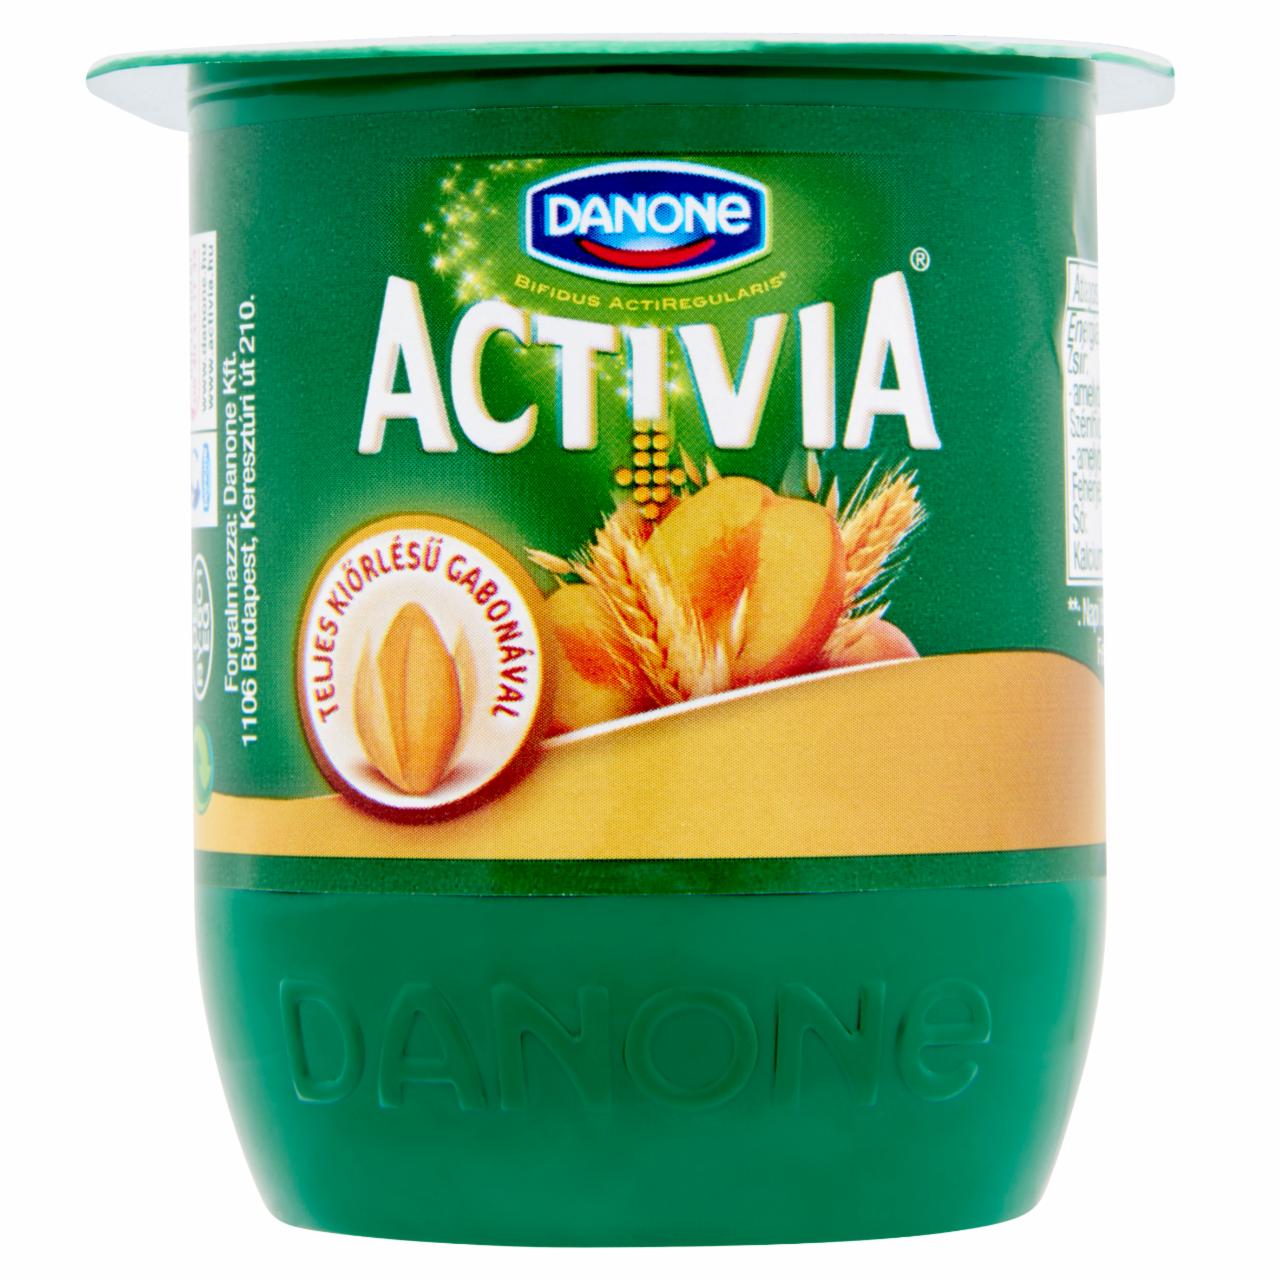 Képek - Danone Activia élőflórás joghurt őszibarackkal, mazsolával és gabonával 125 g